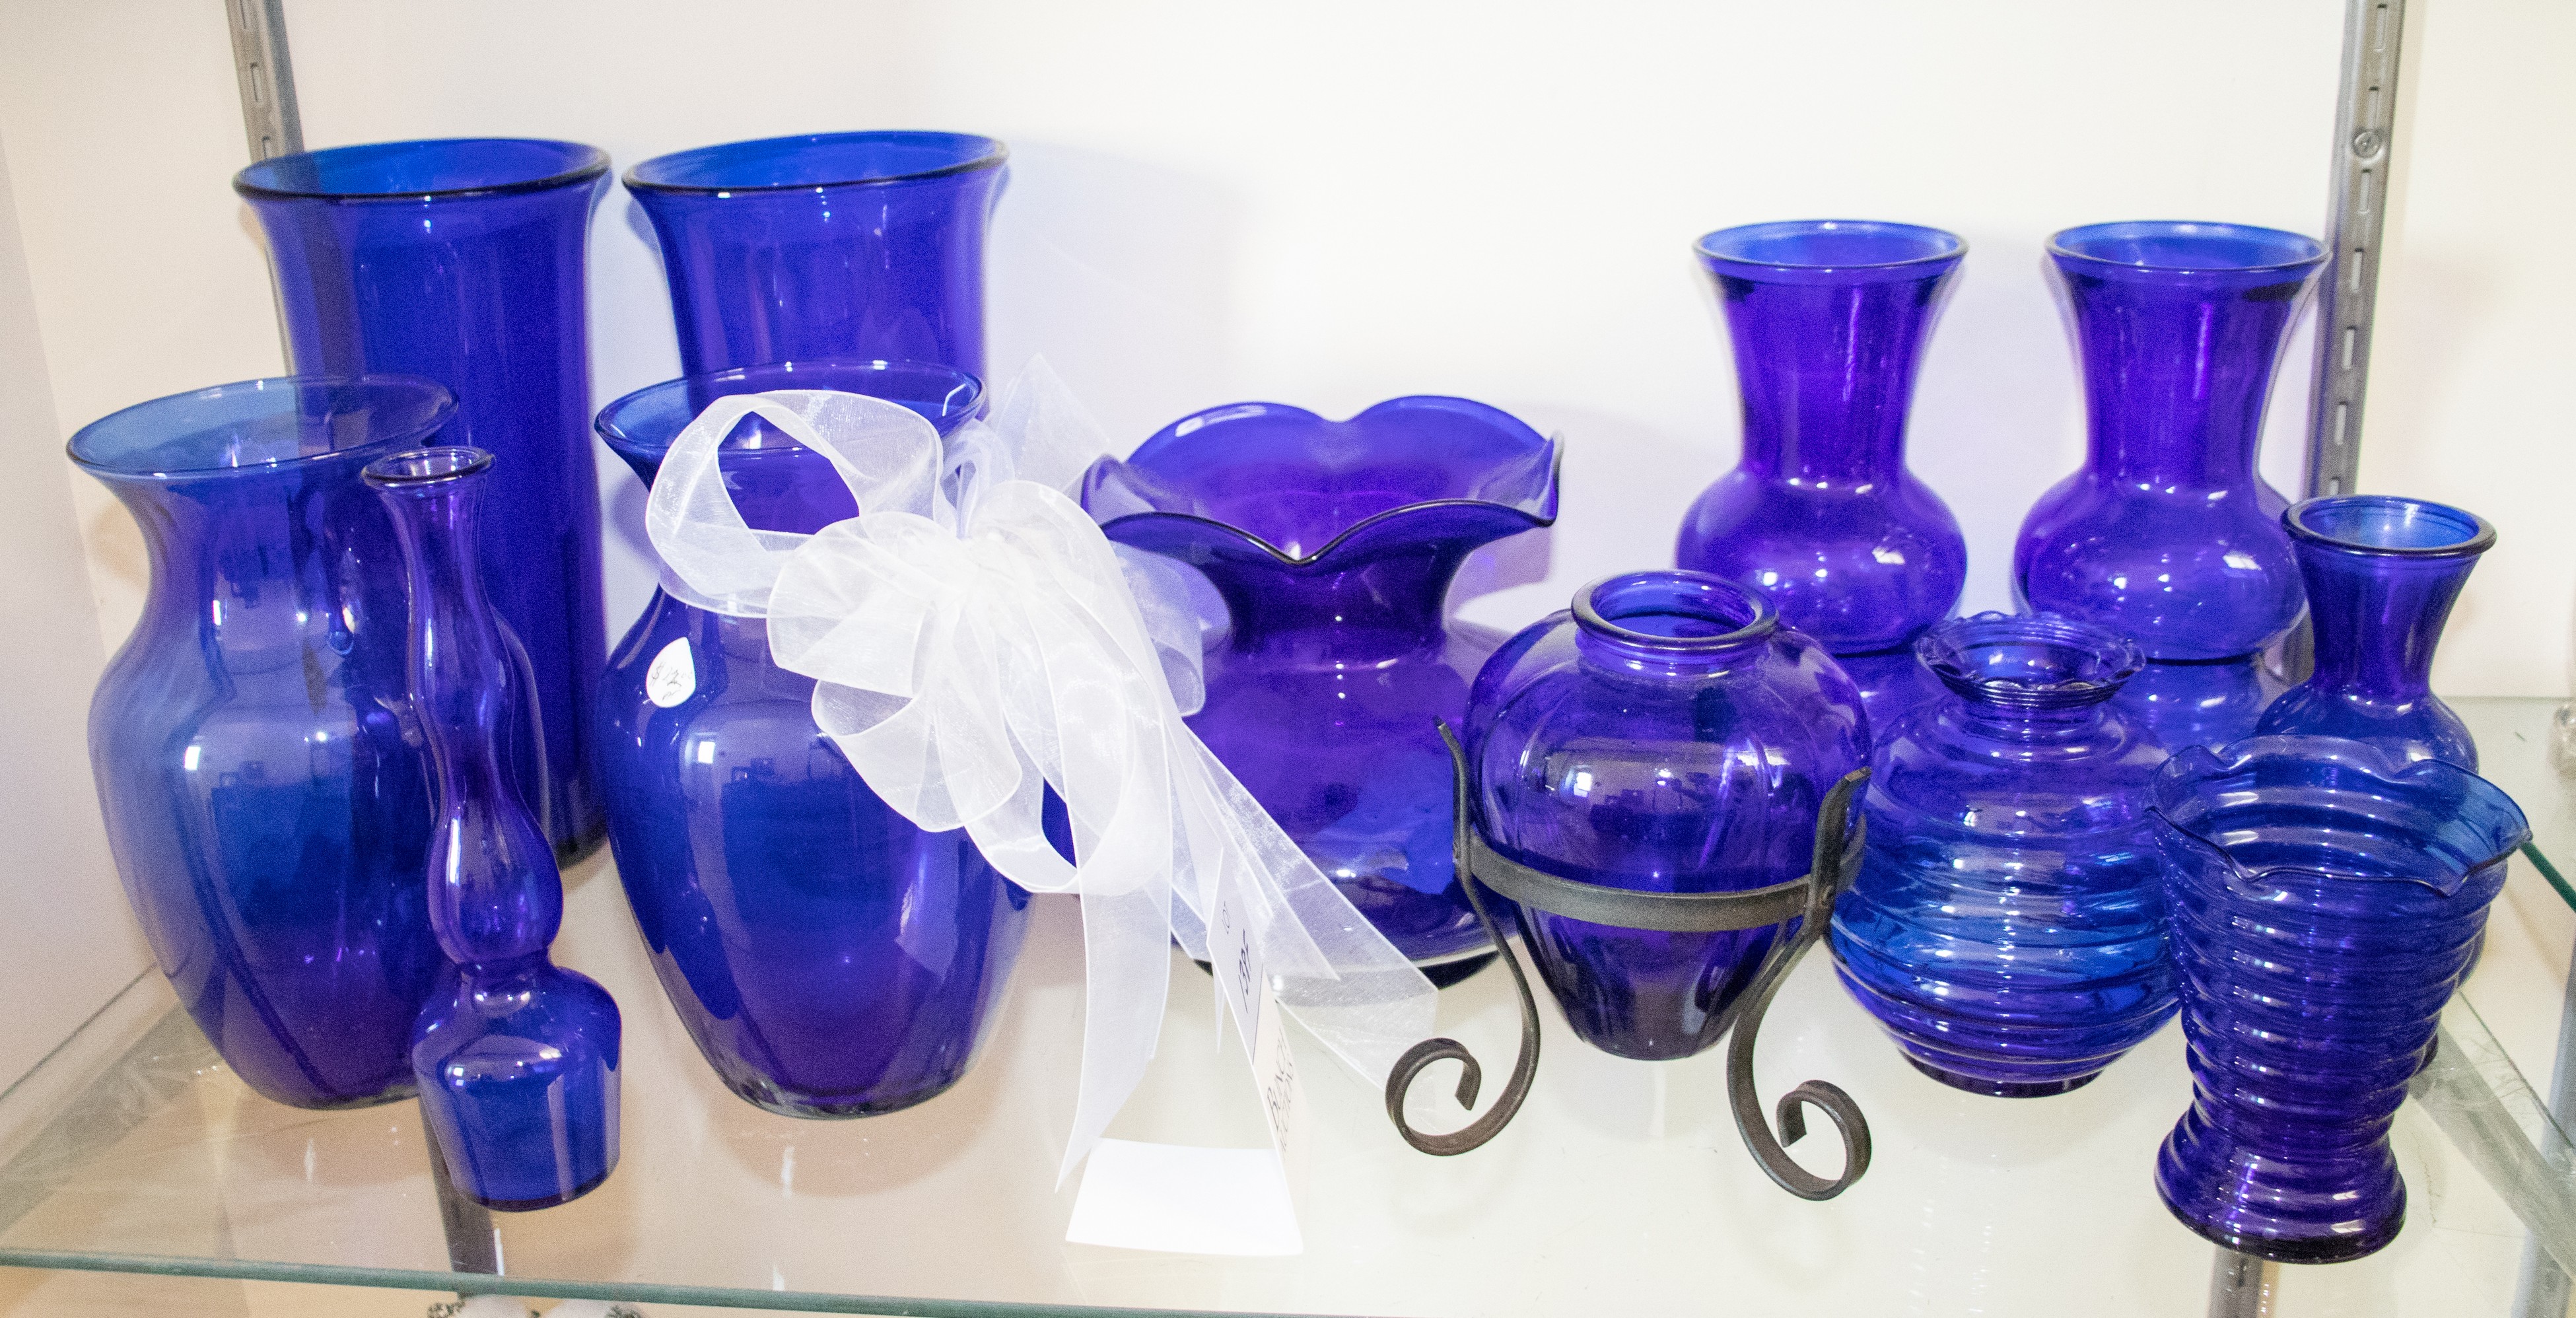 (12) Blue glass vases, tallest 10